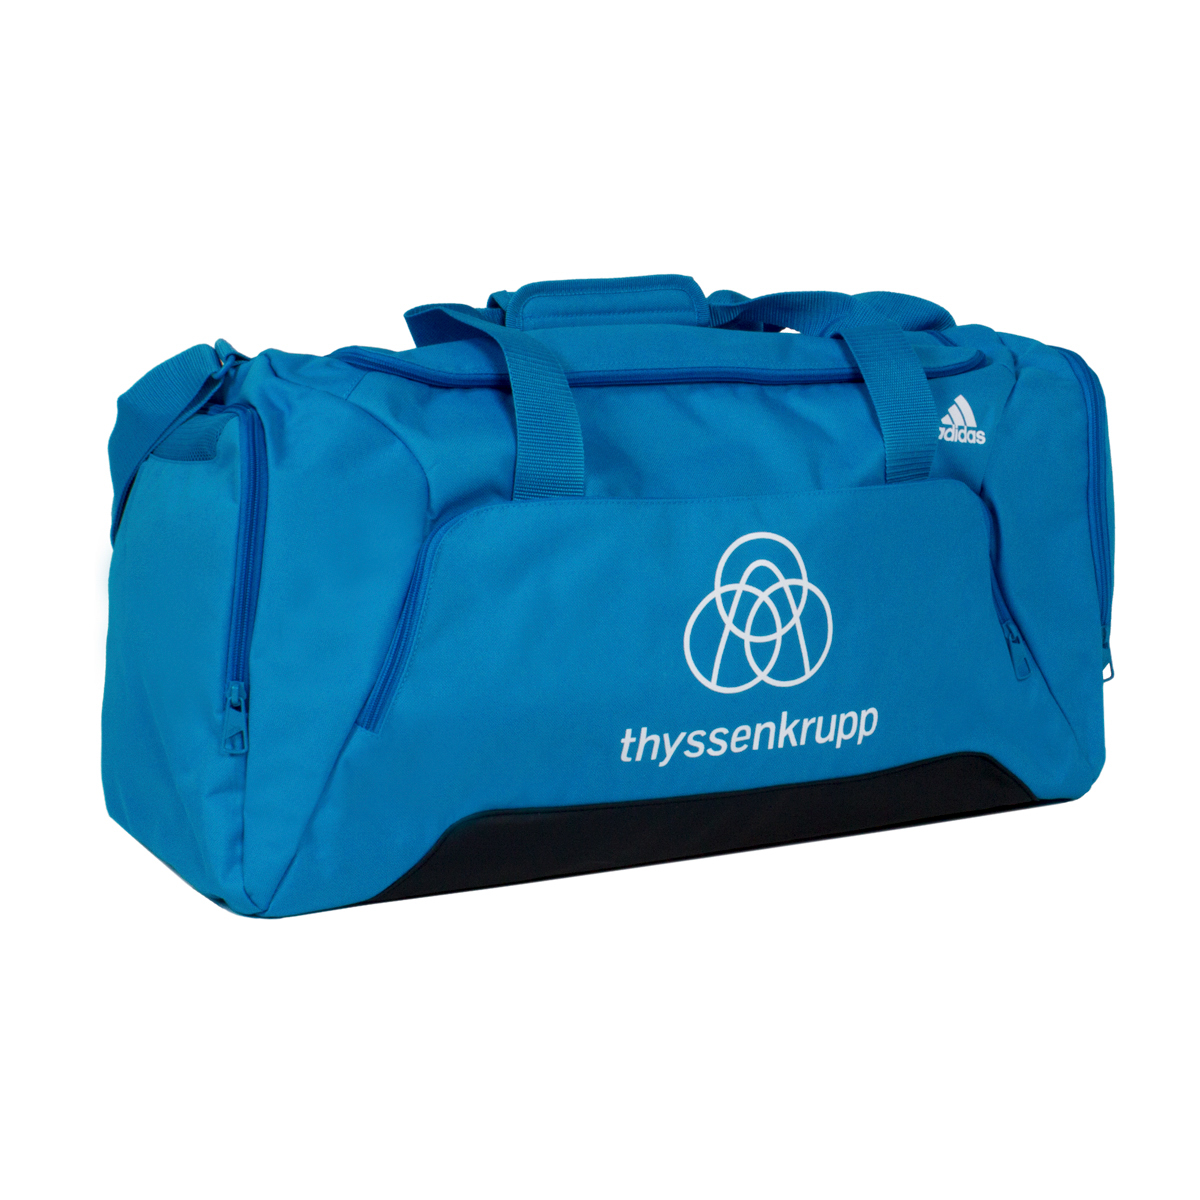 Blaue Thyssenkrupp Sporttasche mit Adidas Logo